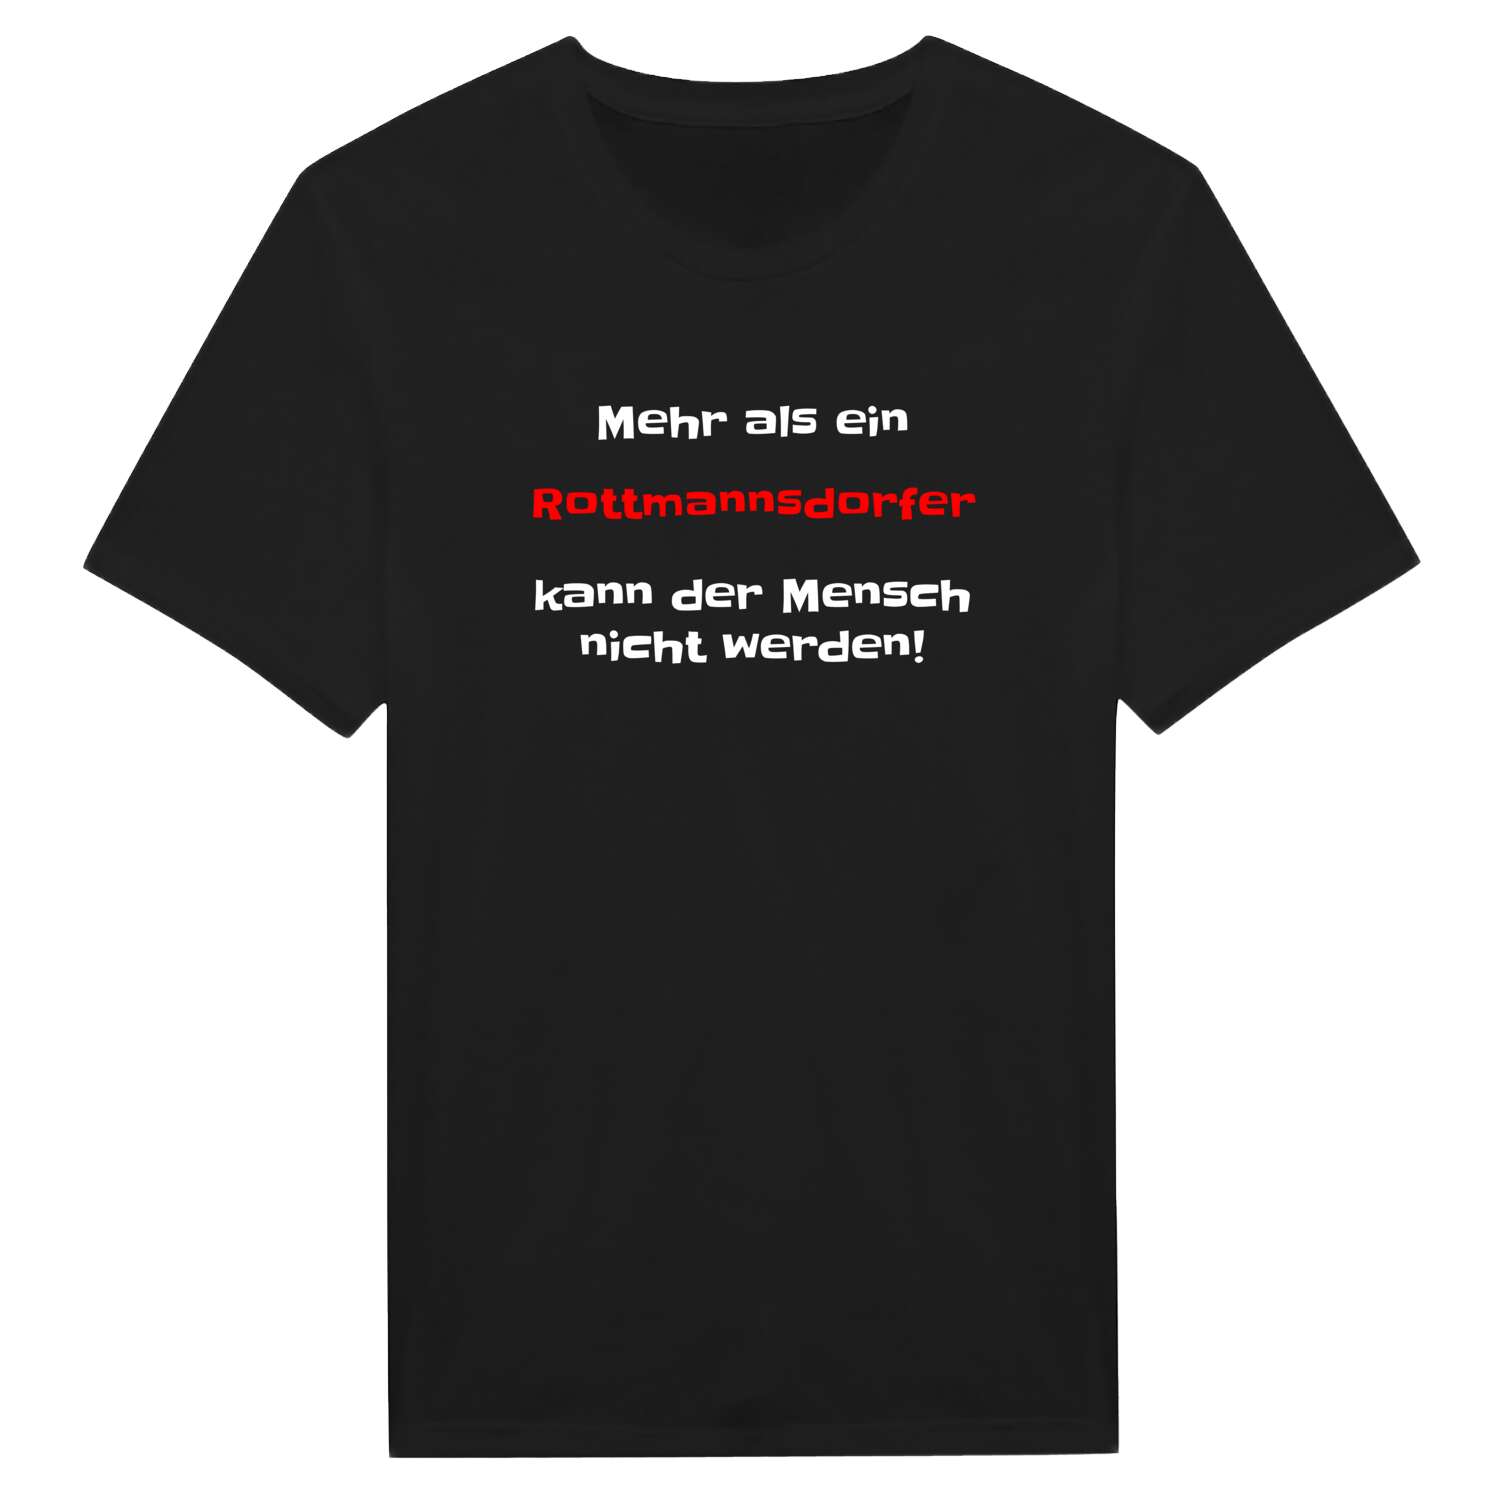 Rottmannsdorf T-Shirt »Mehr als ein«